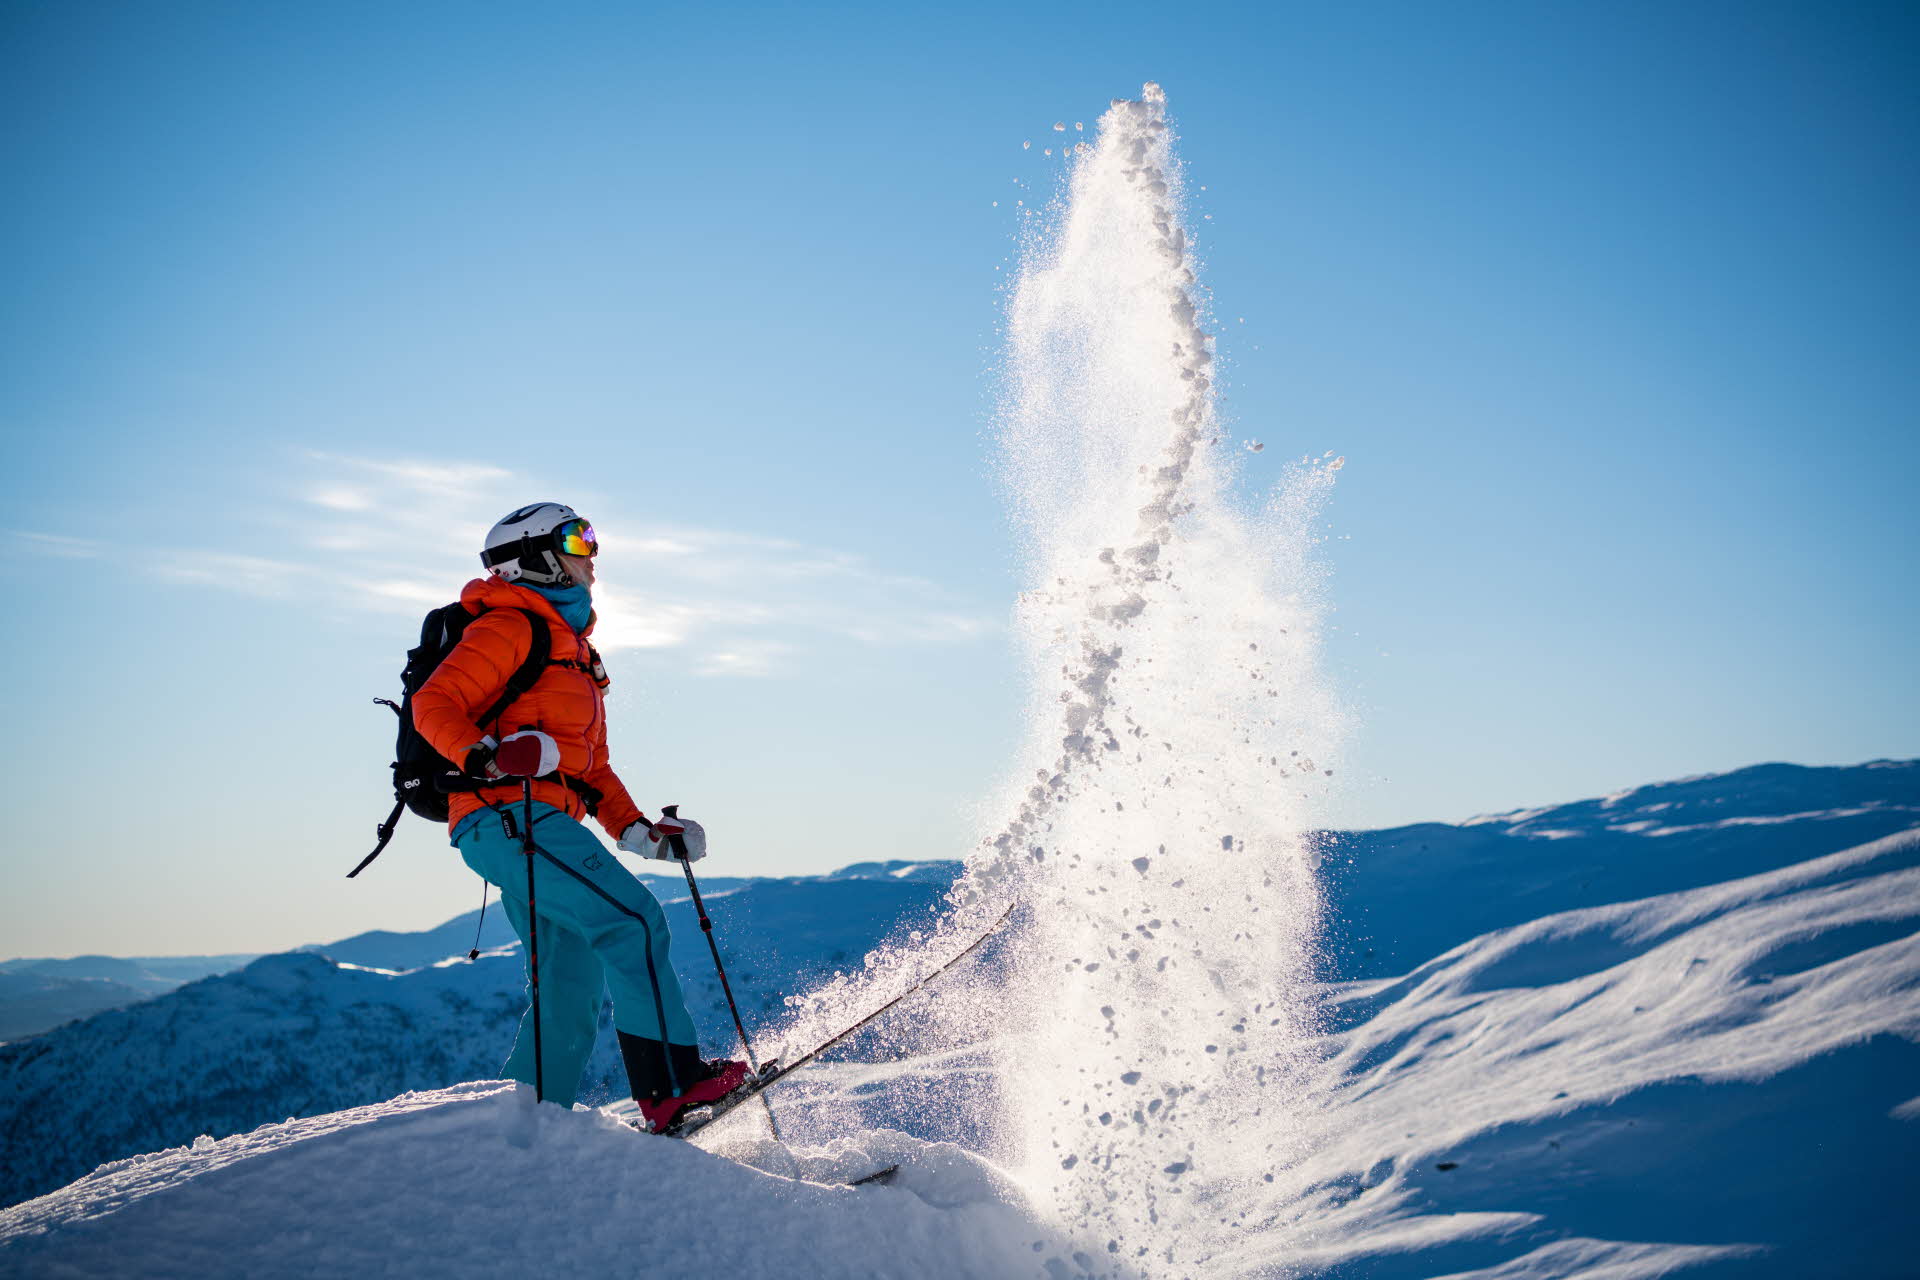 Une personne portant un casque, une veste rouge et un pantalon bleu lance de la neige avec un ski, entourée de montagnes enneigées. 